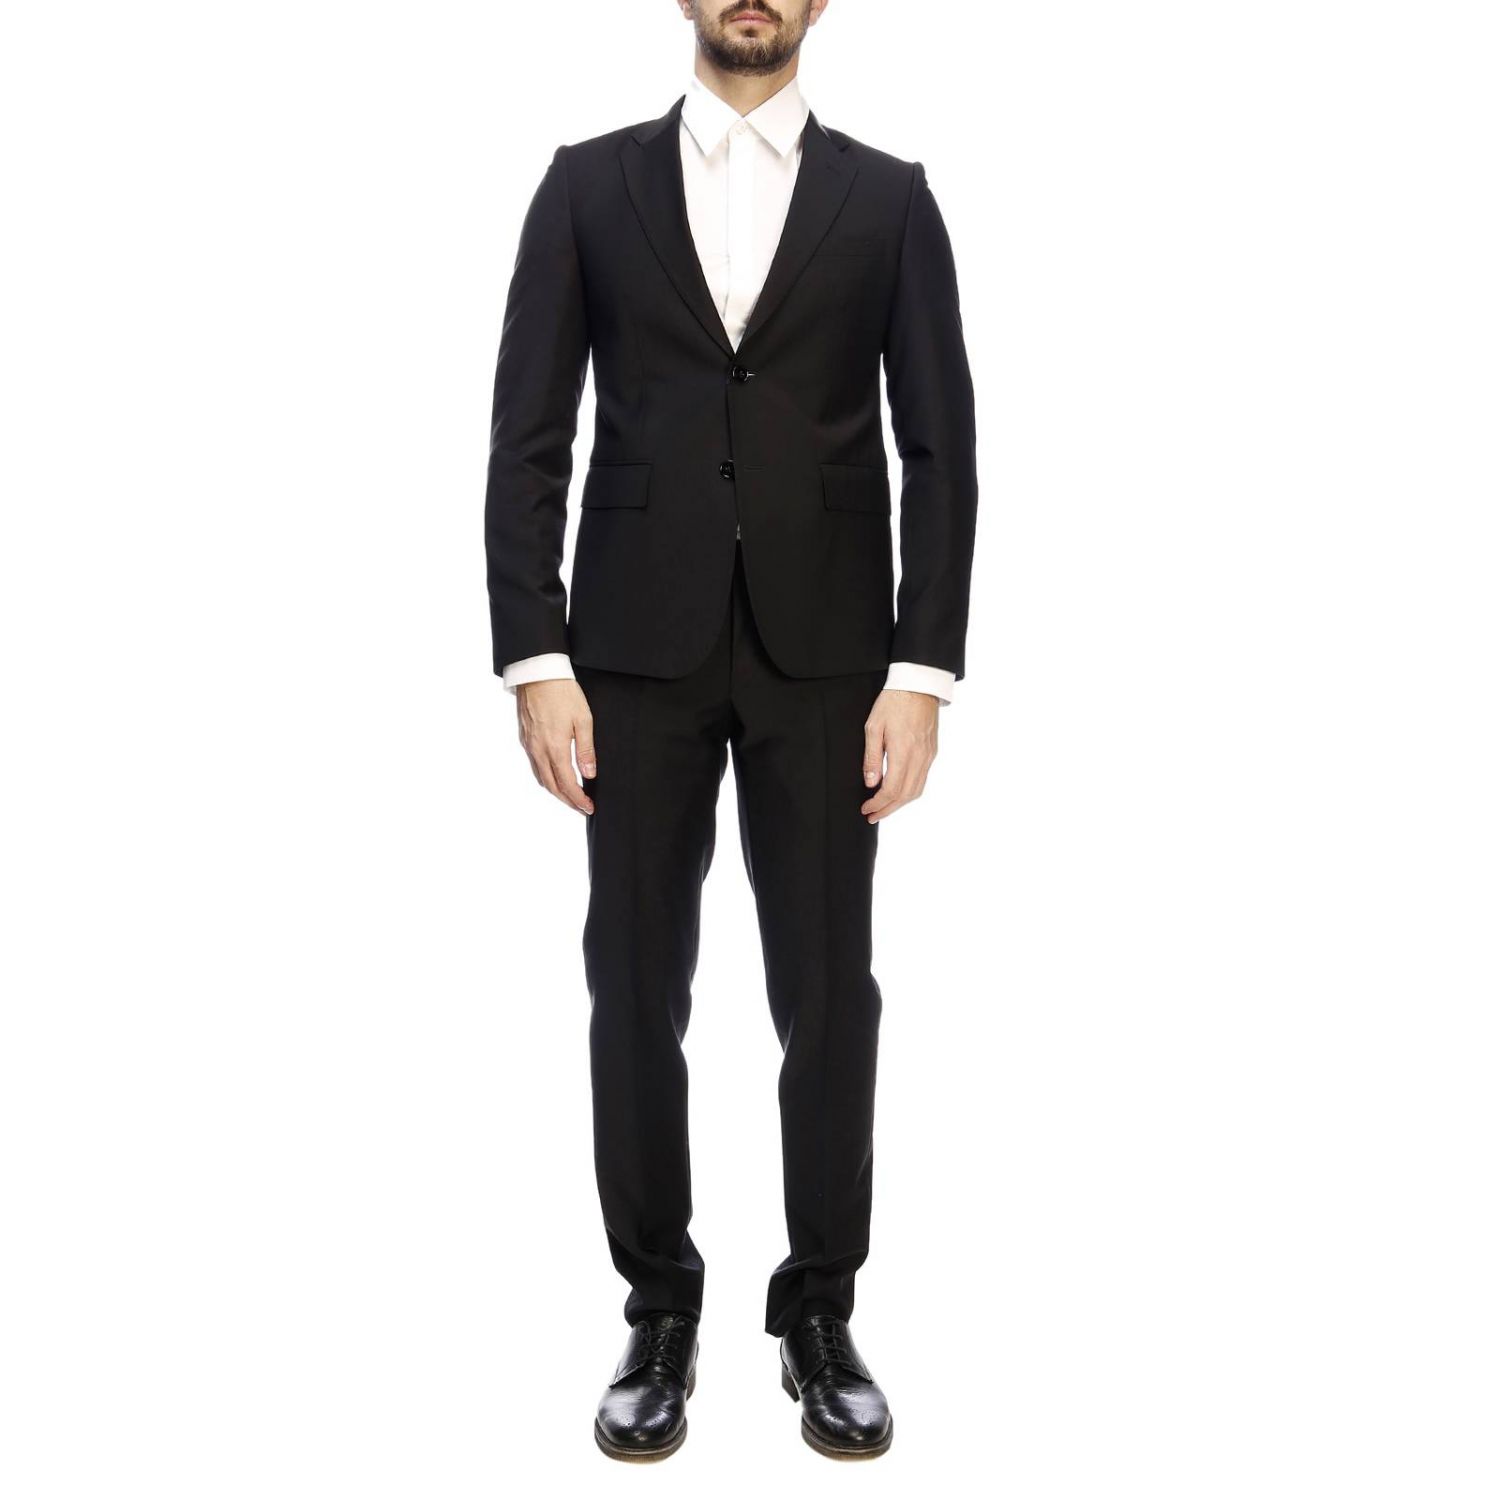 Brian Dales Outlet: suit for man - Black | Brian Dales suit GA81 JK4065 ...